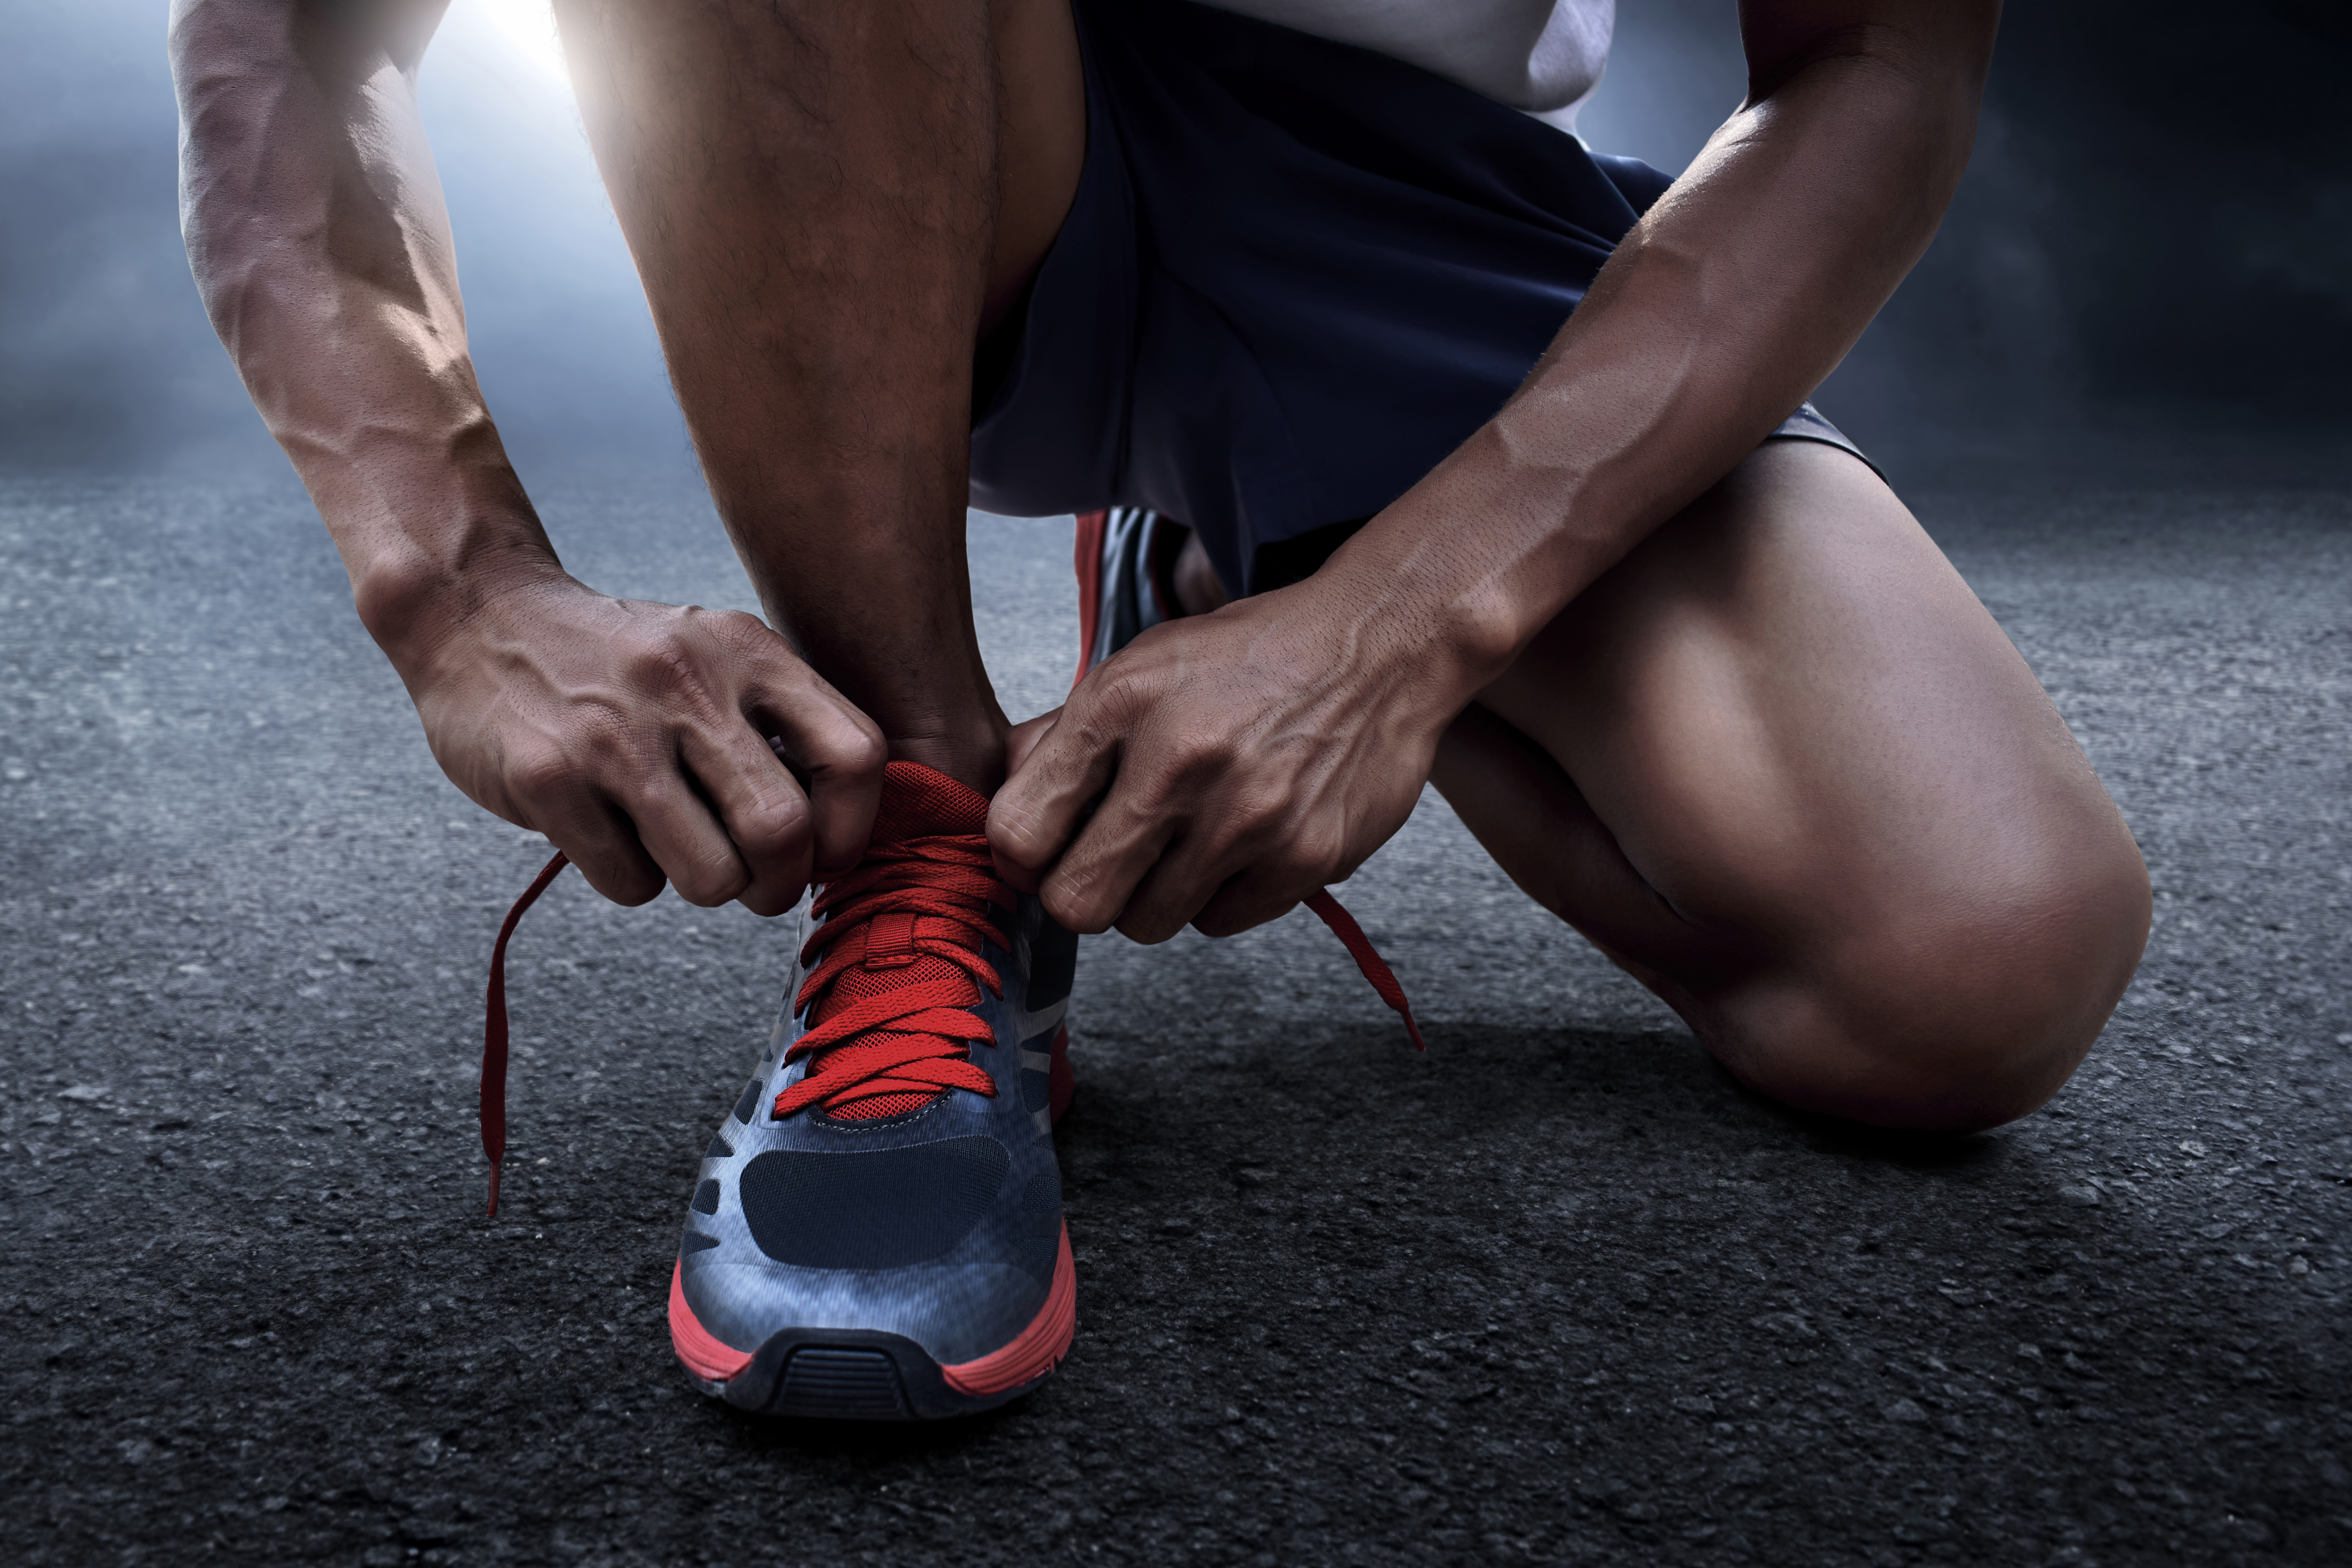 A man tying his shoe lace as he prepares to run | Source: Shutterstock